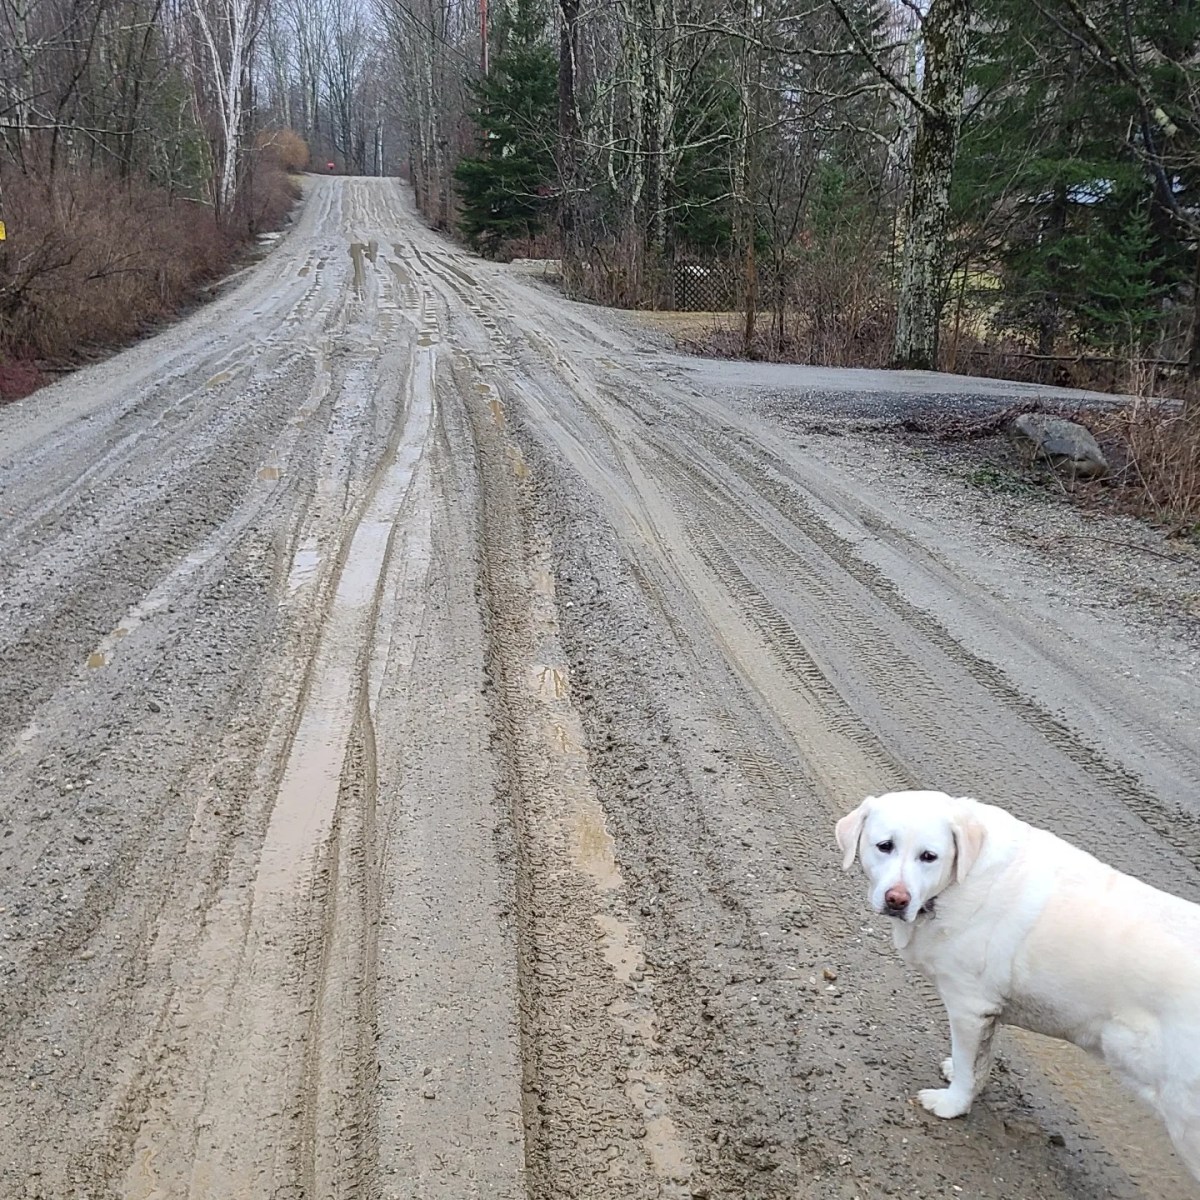 A dog on a muddy road